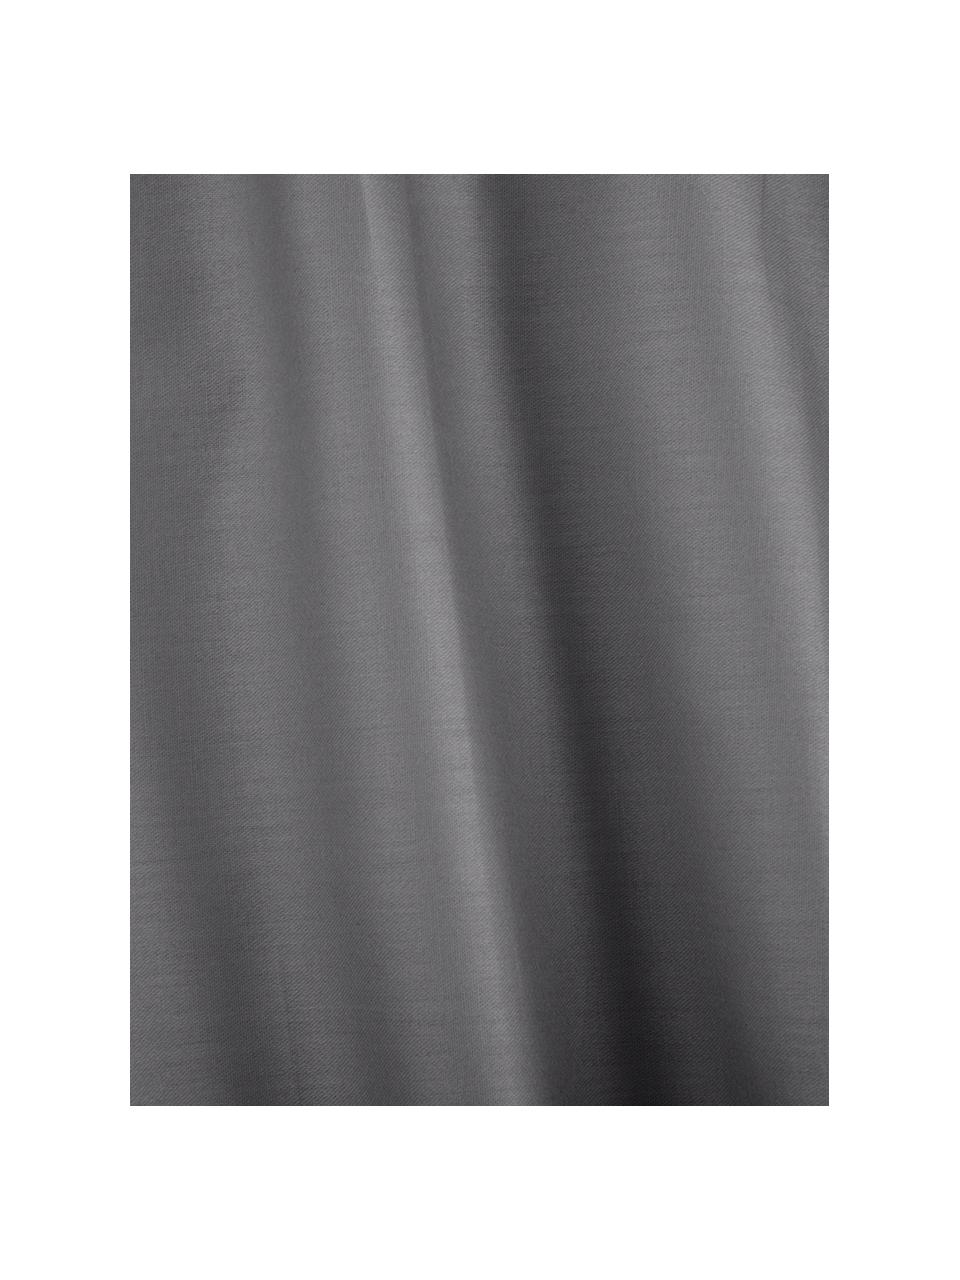 Biancheria da letto in raso di cotone grigio scuro Comfort, Tessuto: raso Densità del filo 250, Grigio scuro, 150 x 300 cm + 1 federa 50 x 80 cm